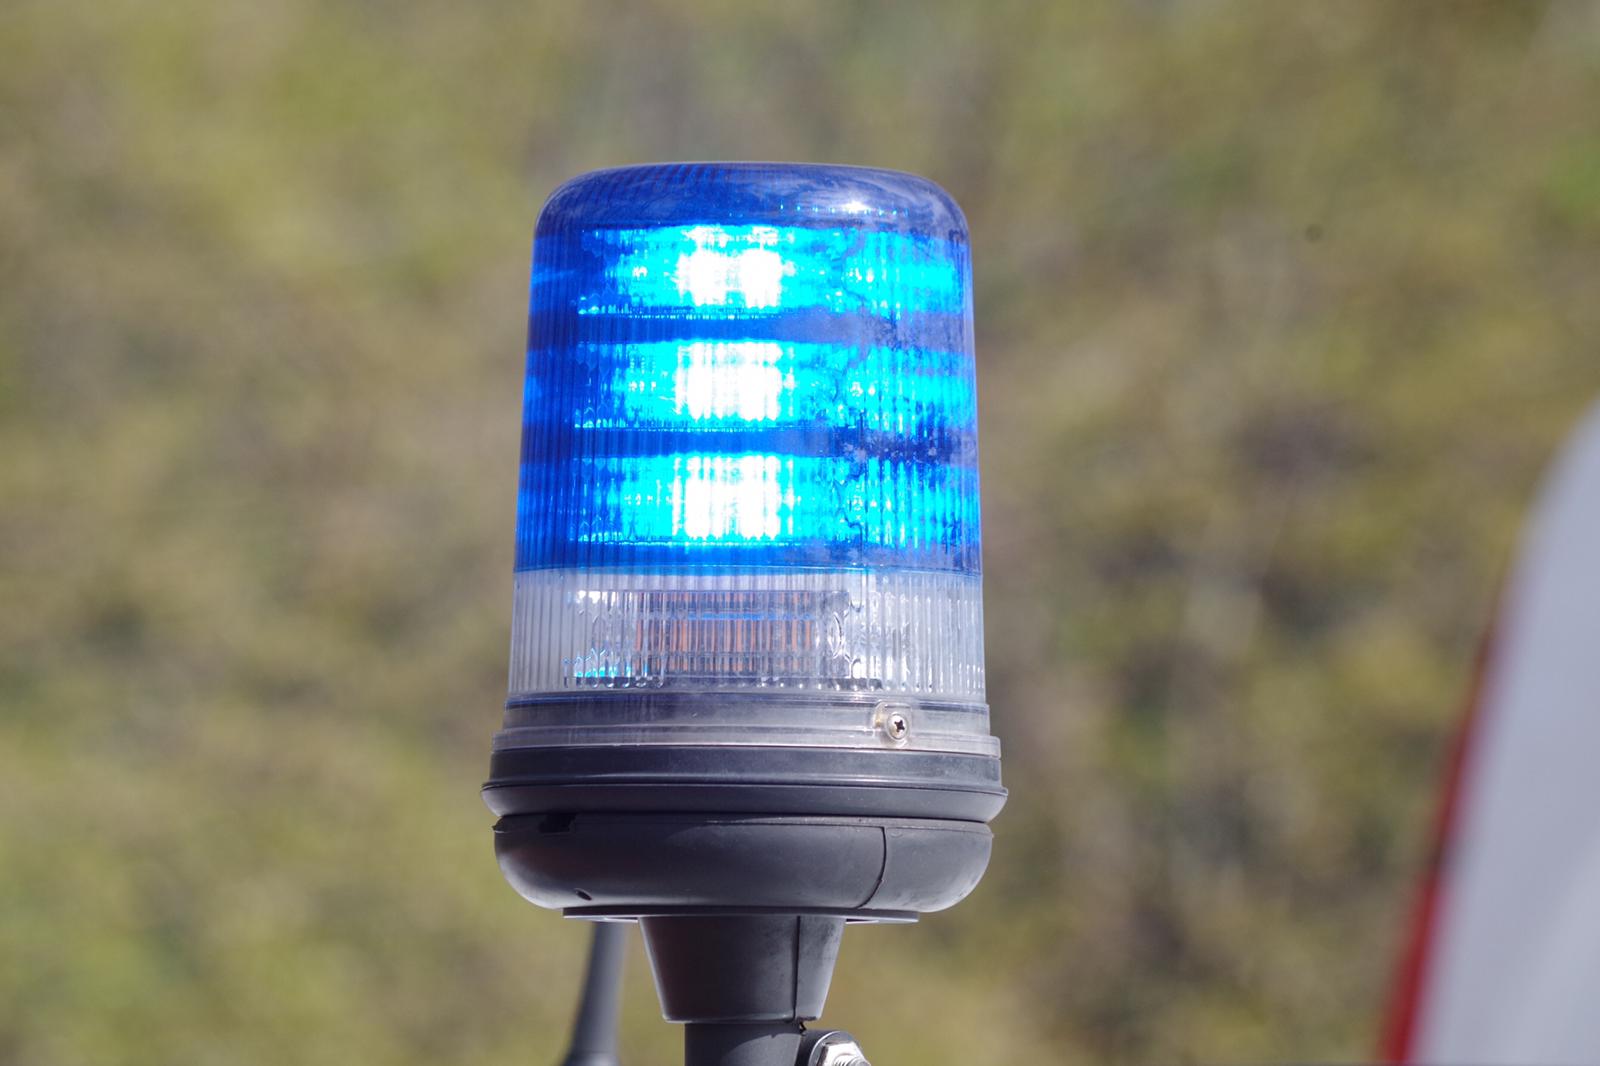 Heerlen - Drietal aangehouden na gooien molotovcocktail naar politiebureau